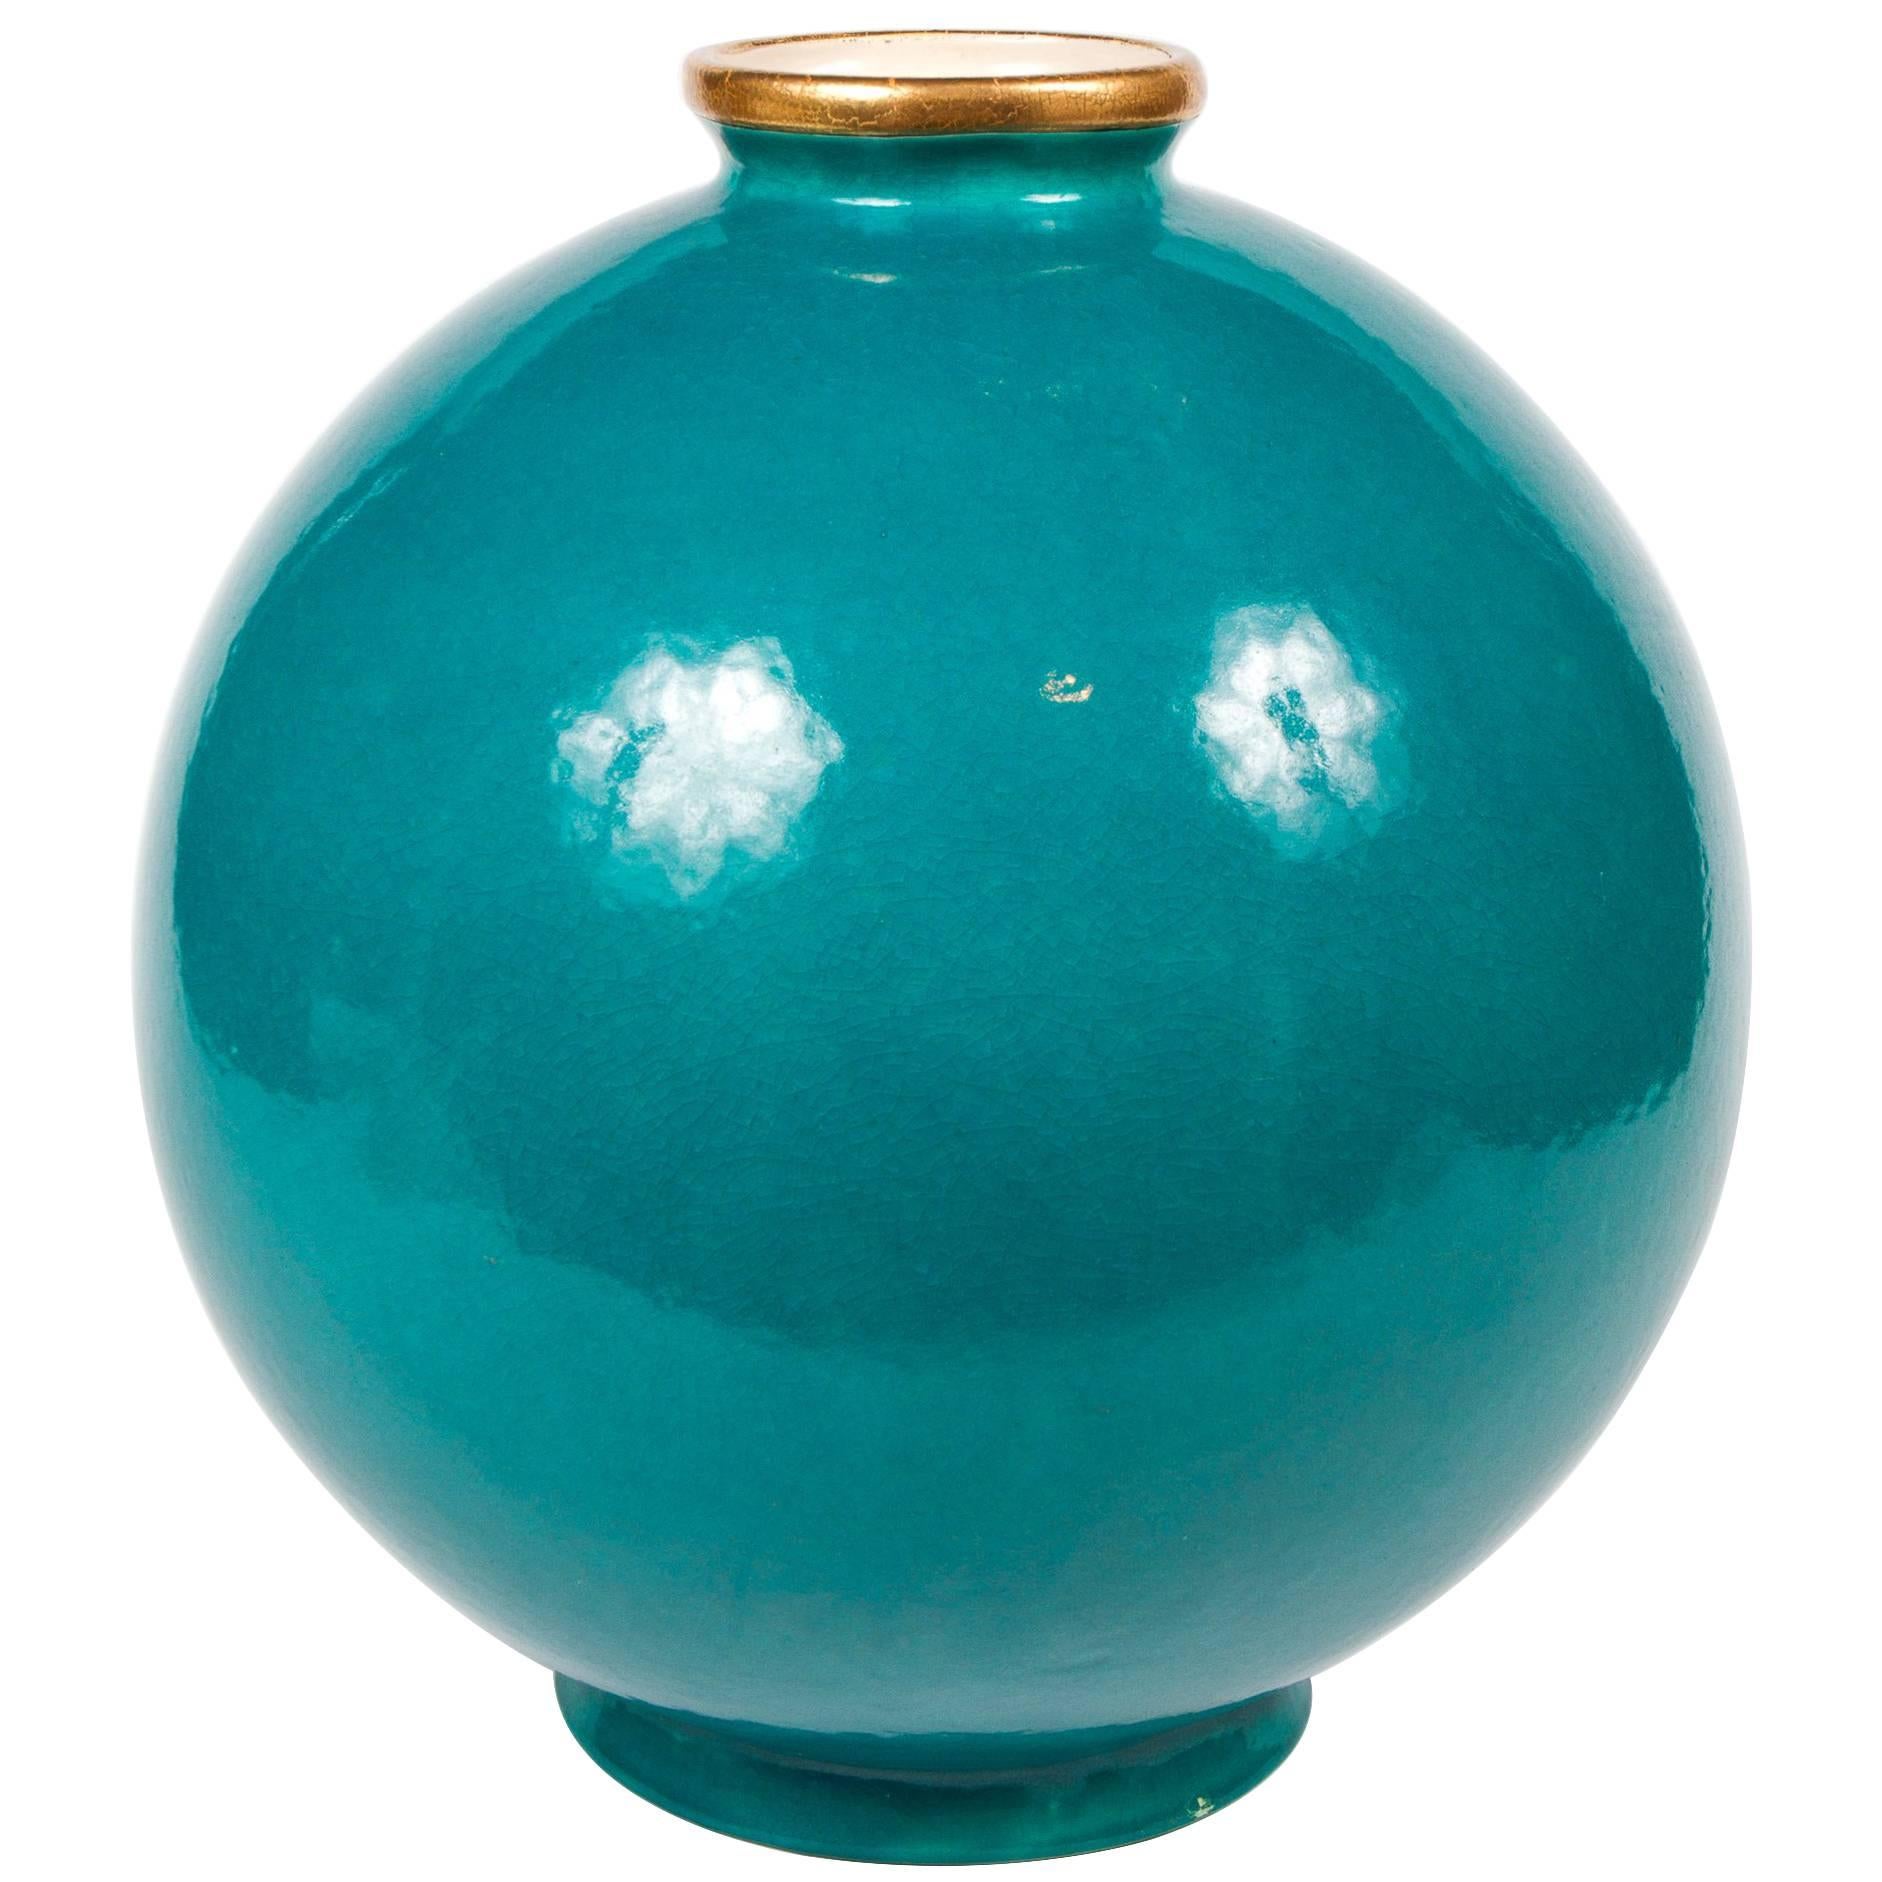 Important Maison Jansen Turquoise Blue Glazed Ceramic Vase